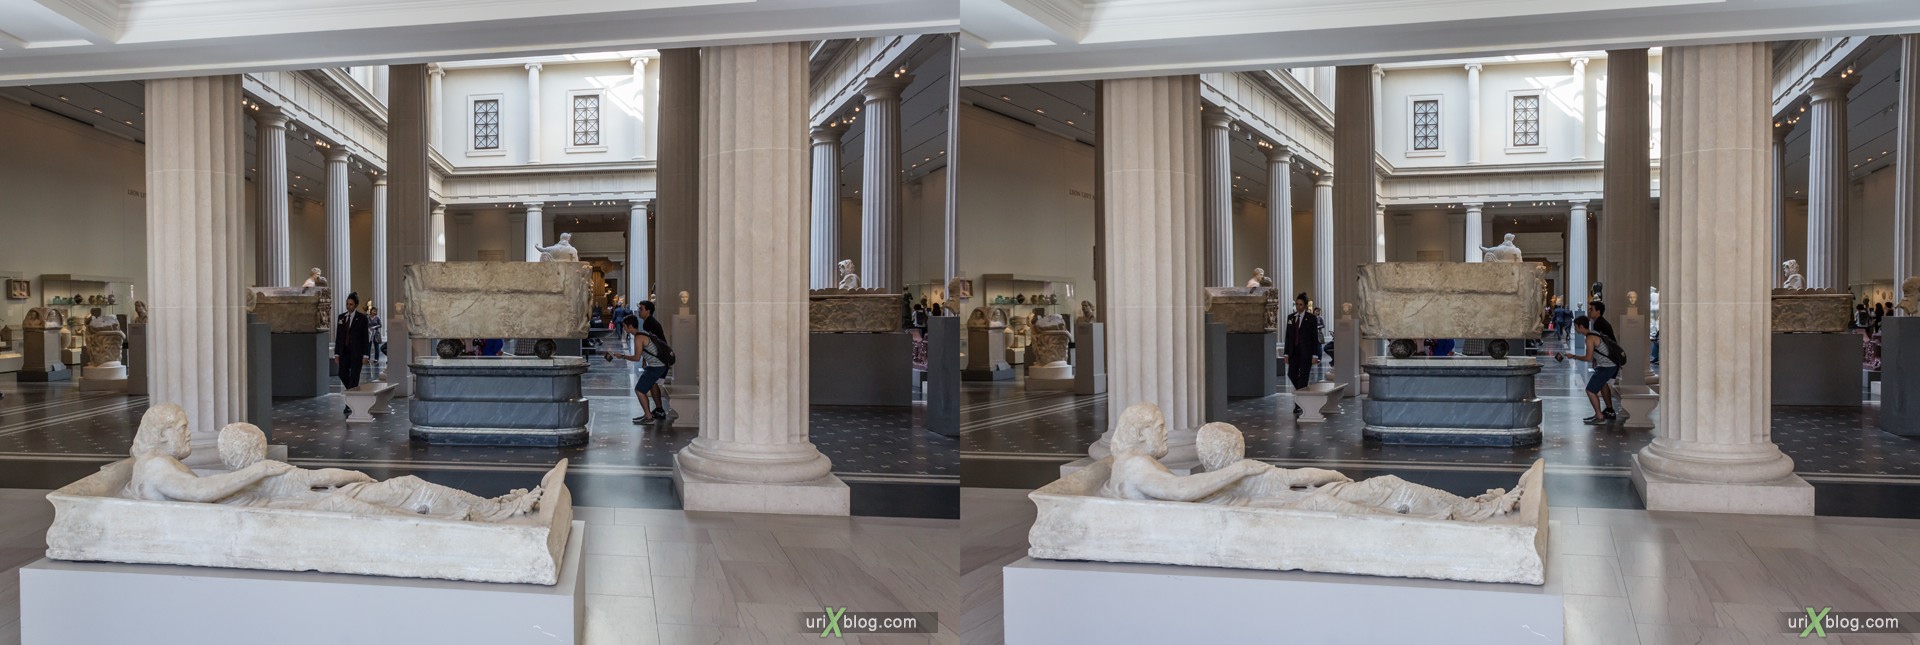 2013, Metropolitan Museum of Art, Нью-Йорк, США, музей, 3D, перекрёстные стереопары, стерео, стереопара, стереопары